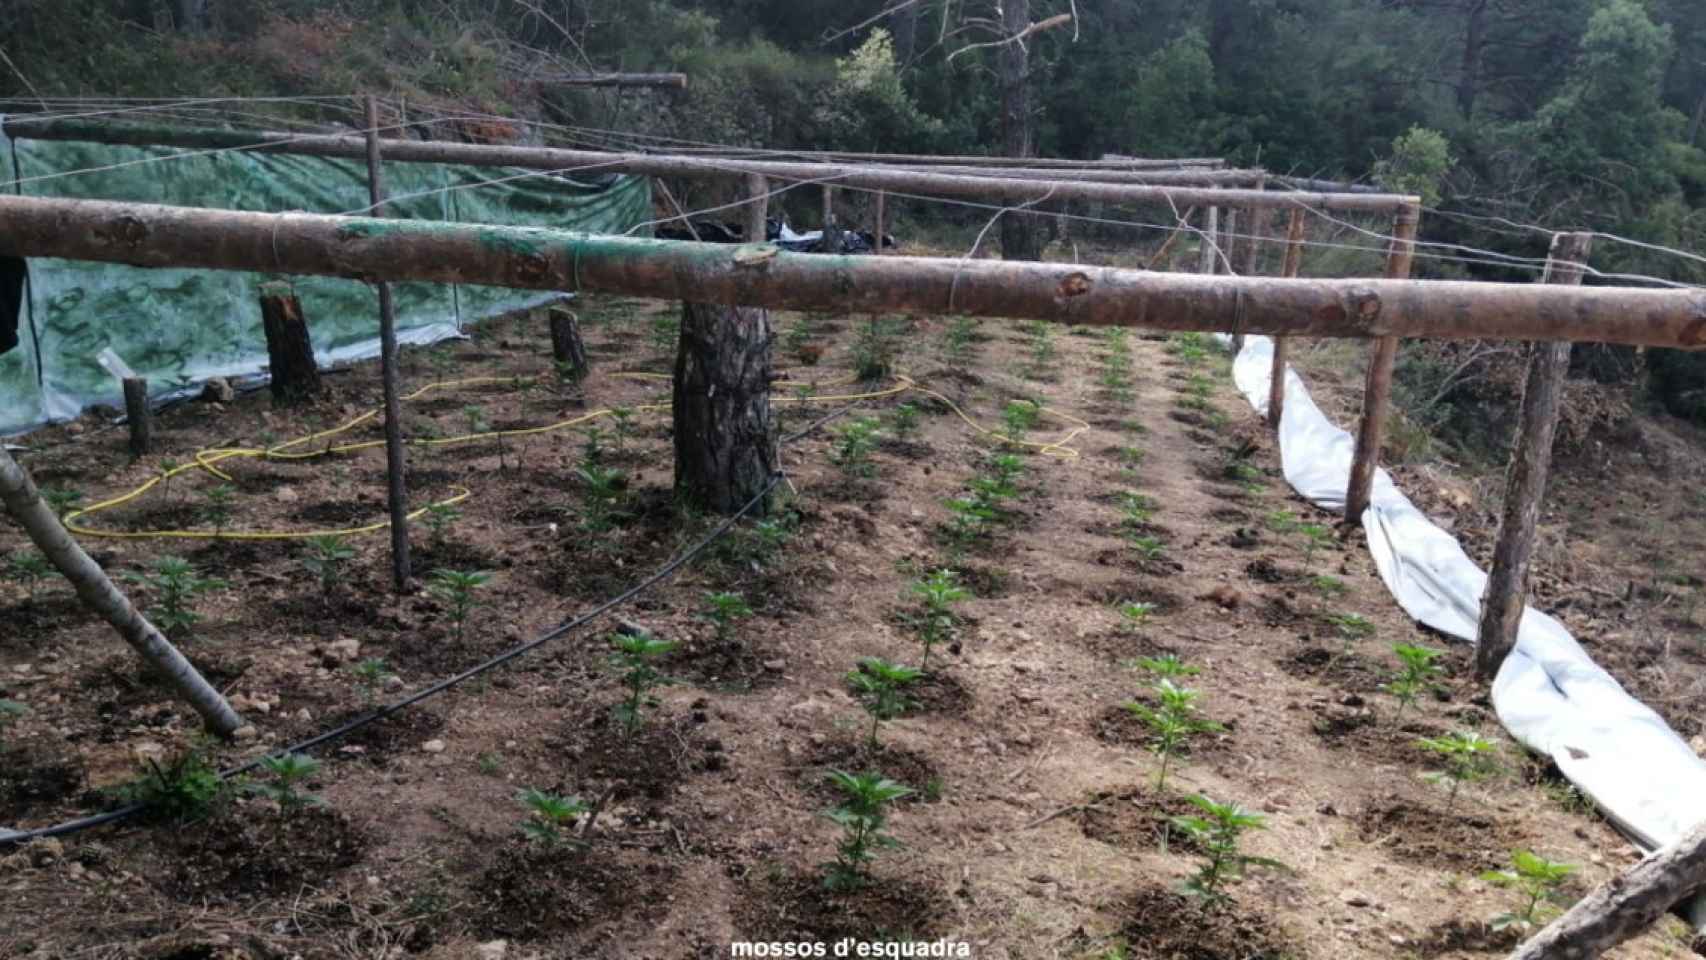 Plantación de marihuana desmantelada en una zona boscosa de l'Alt Camp / MOSSOS D'ESQUADRA